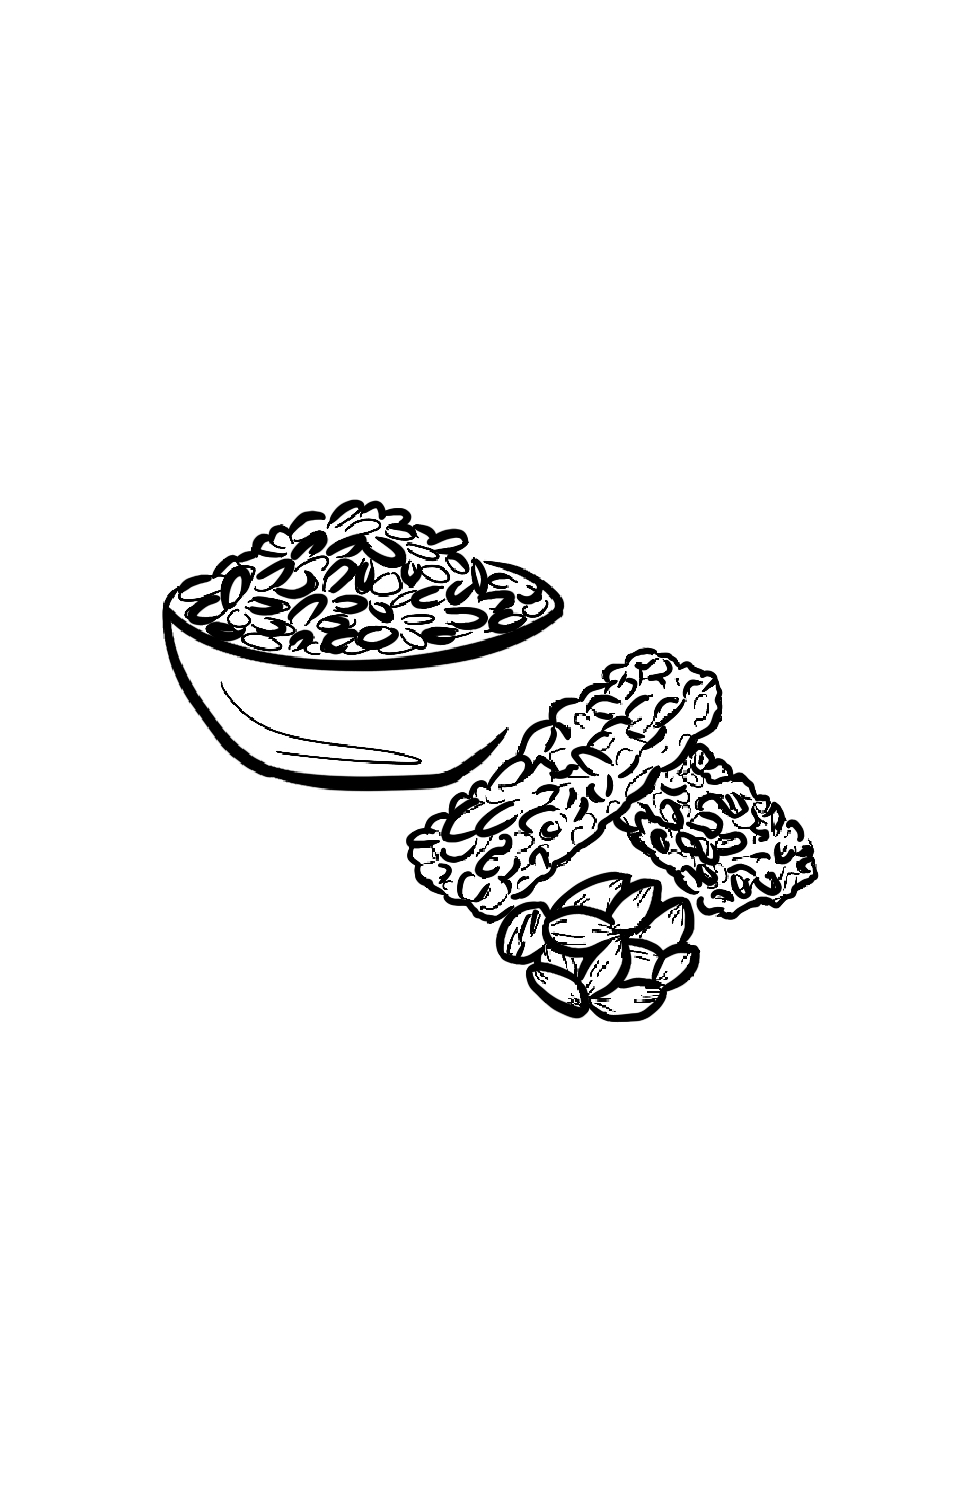 cereals-sketch-2